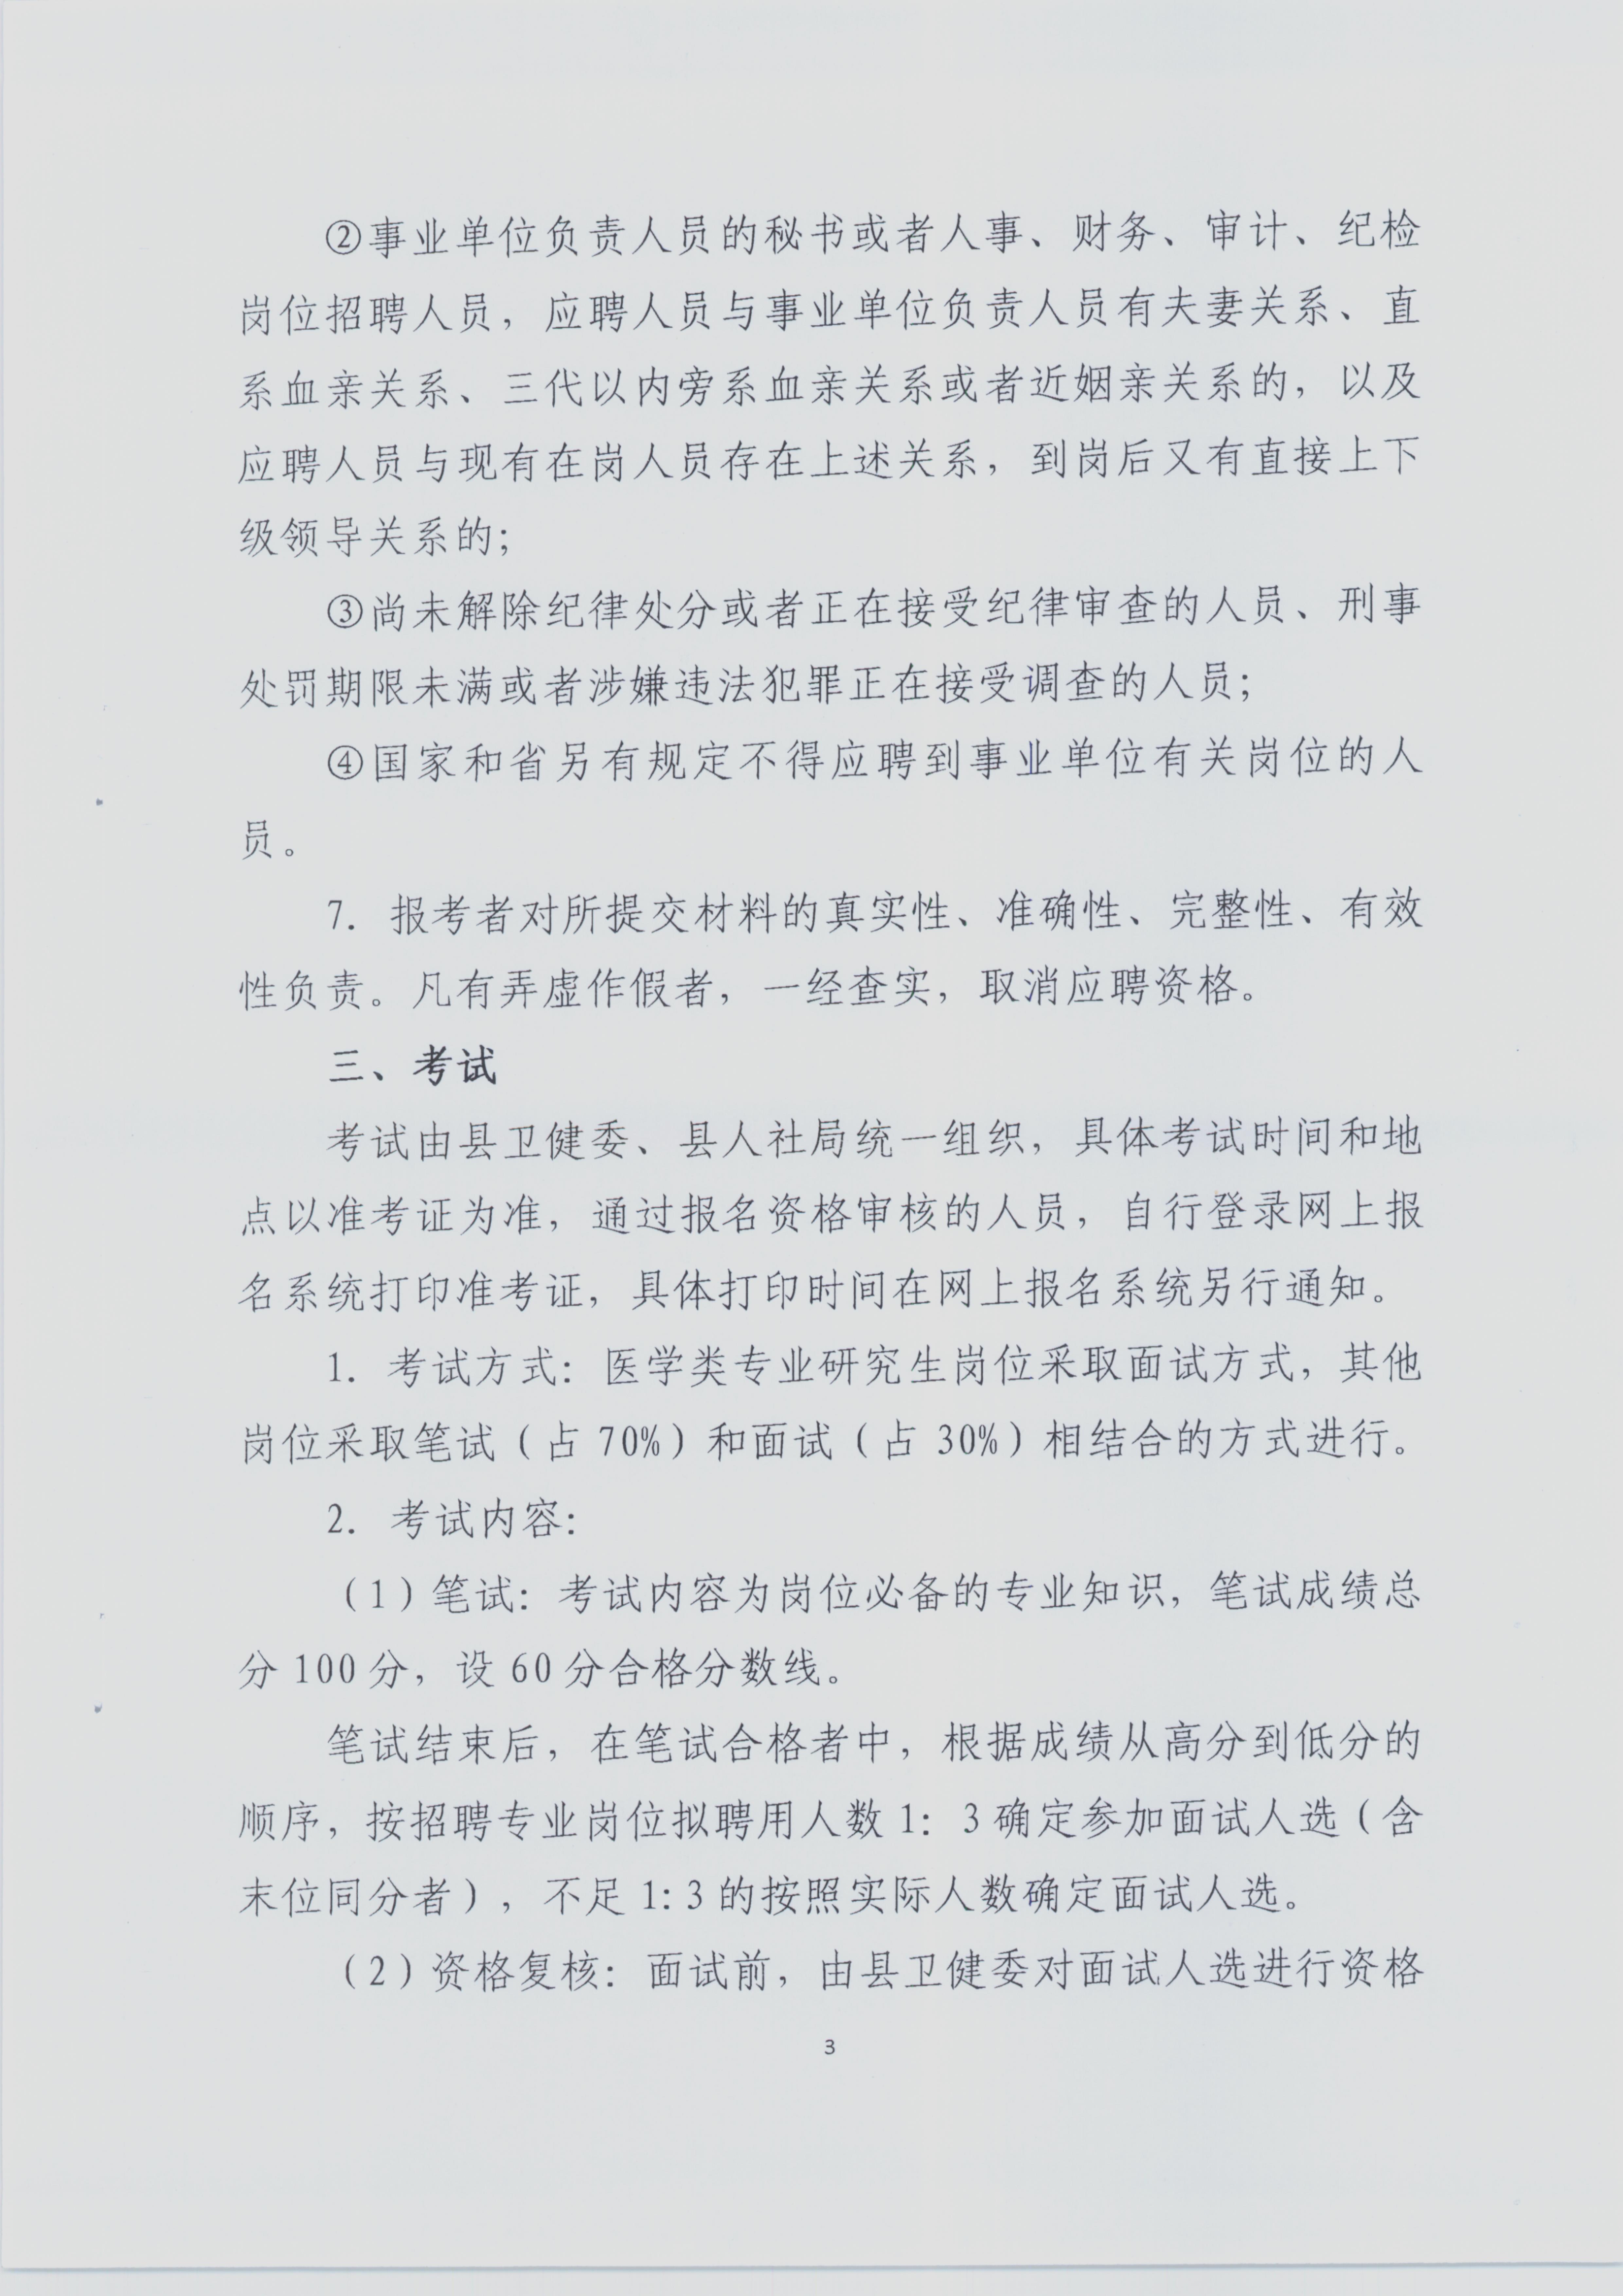 2019年江苏省阜宁县医疗卫生事业单位公开招聘工作人员公告003.jpg